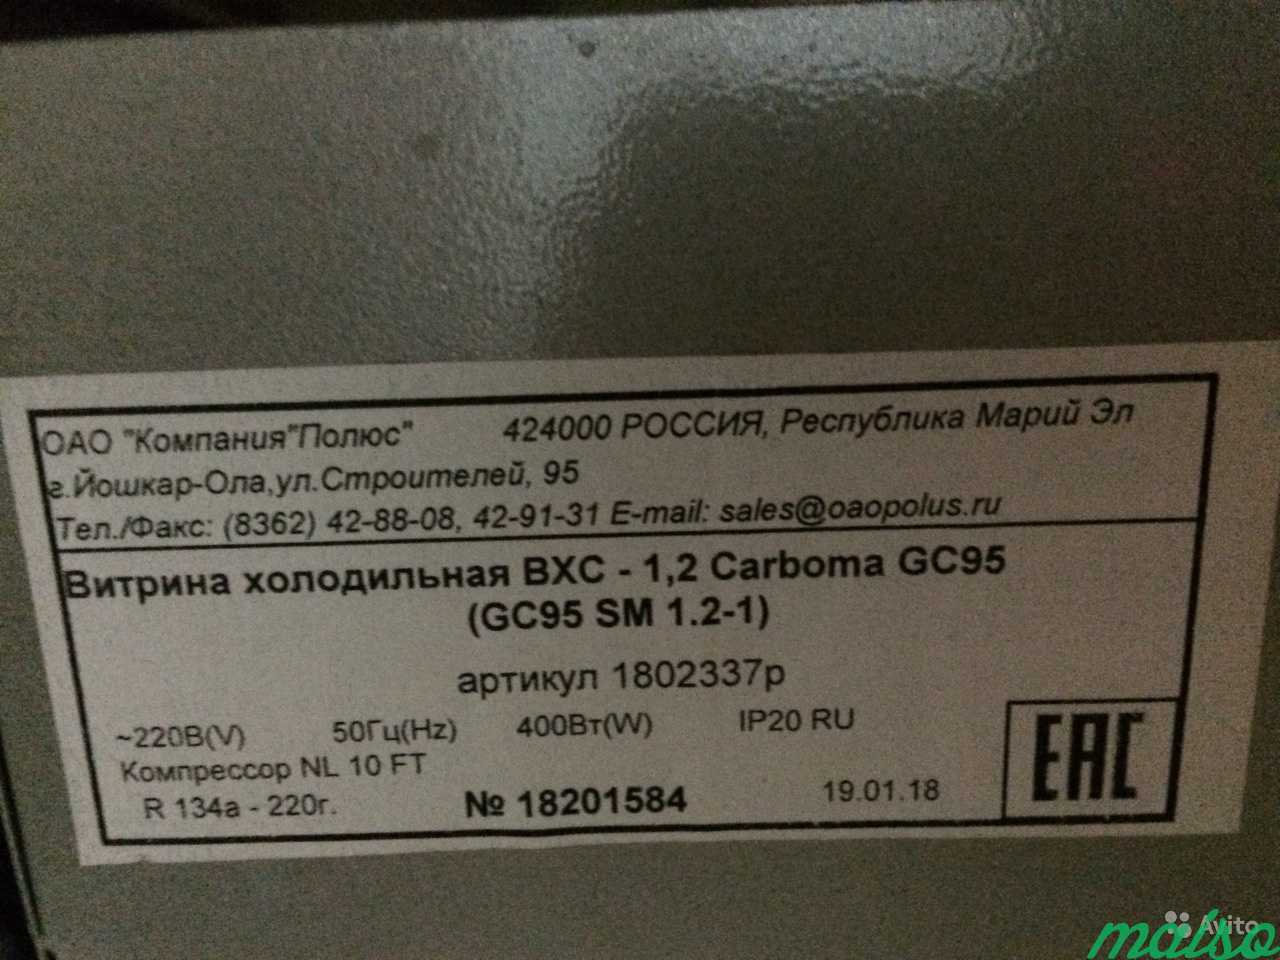 Холодильная ветрина, вакумный упаковщик, вывеска в Москве. Фото 3